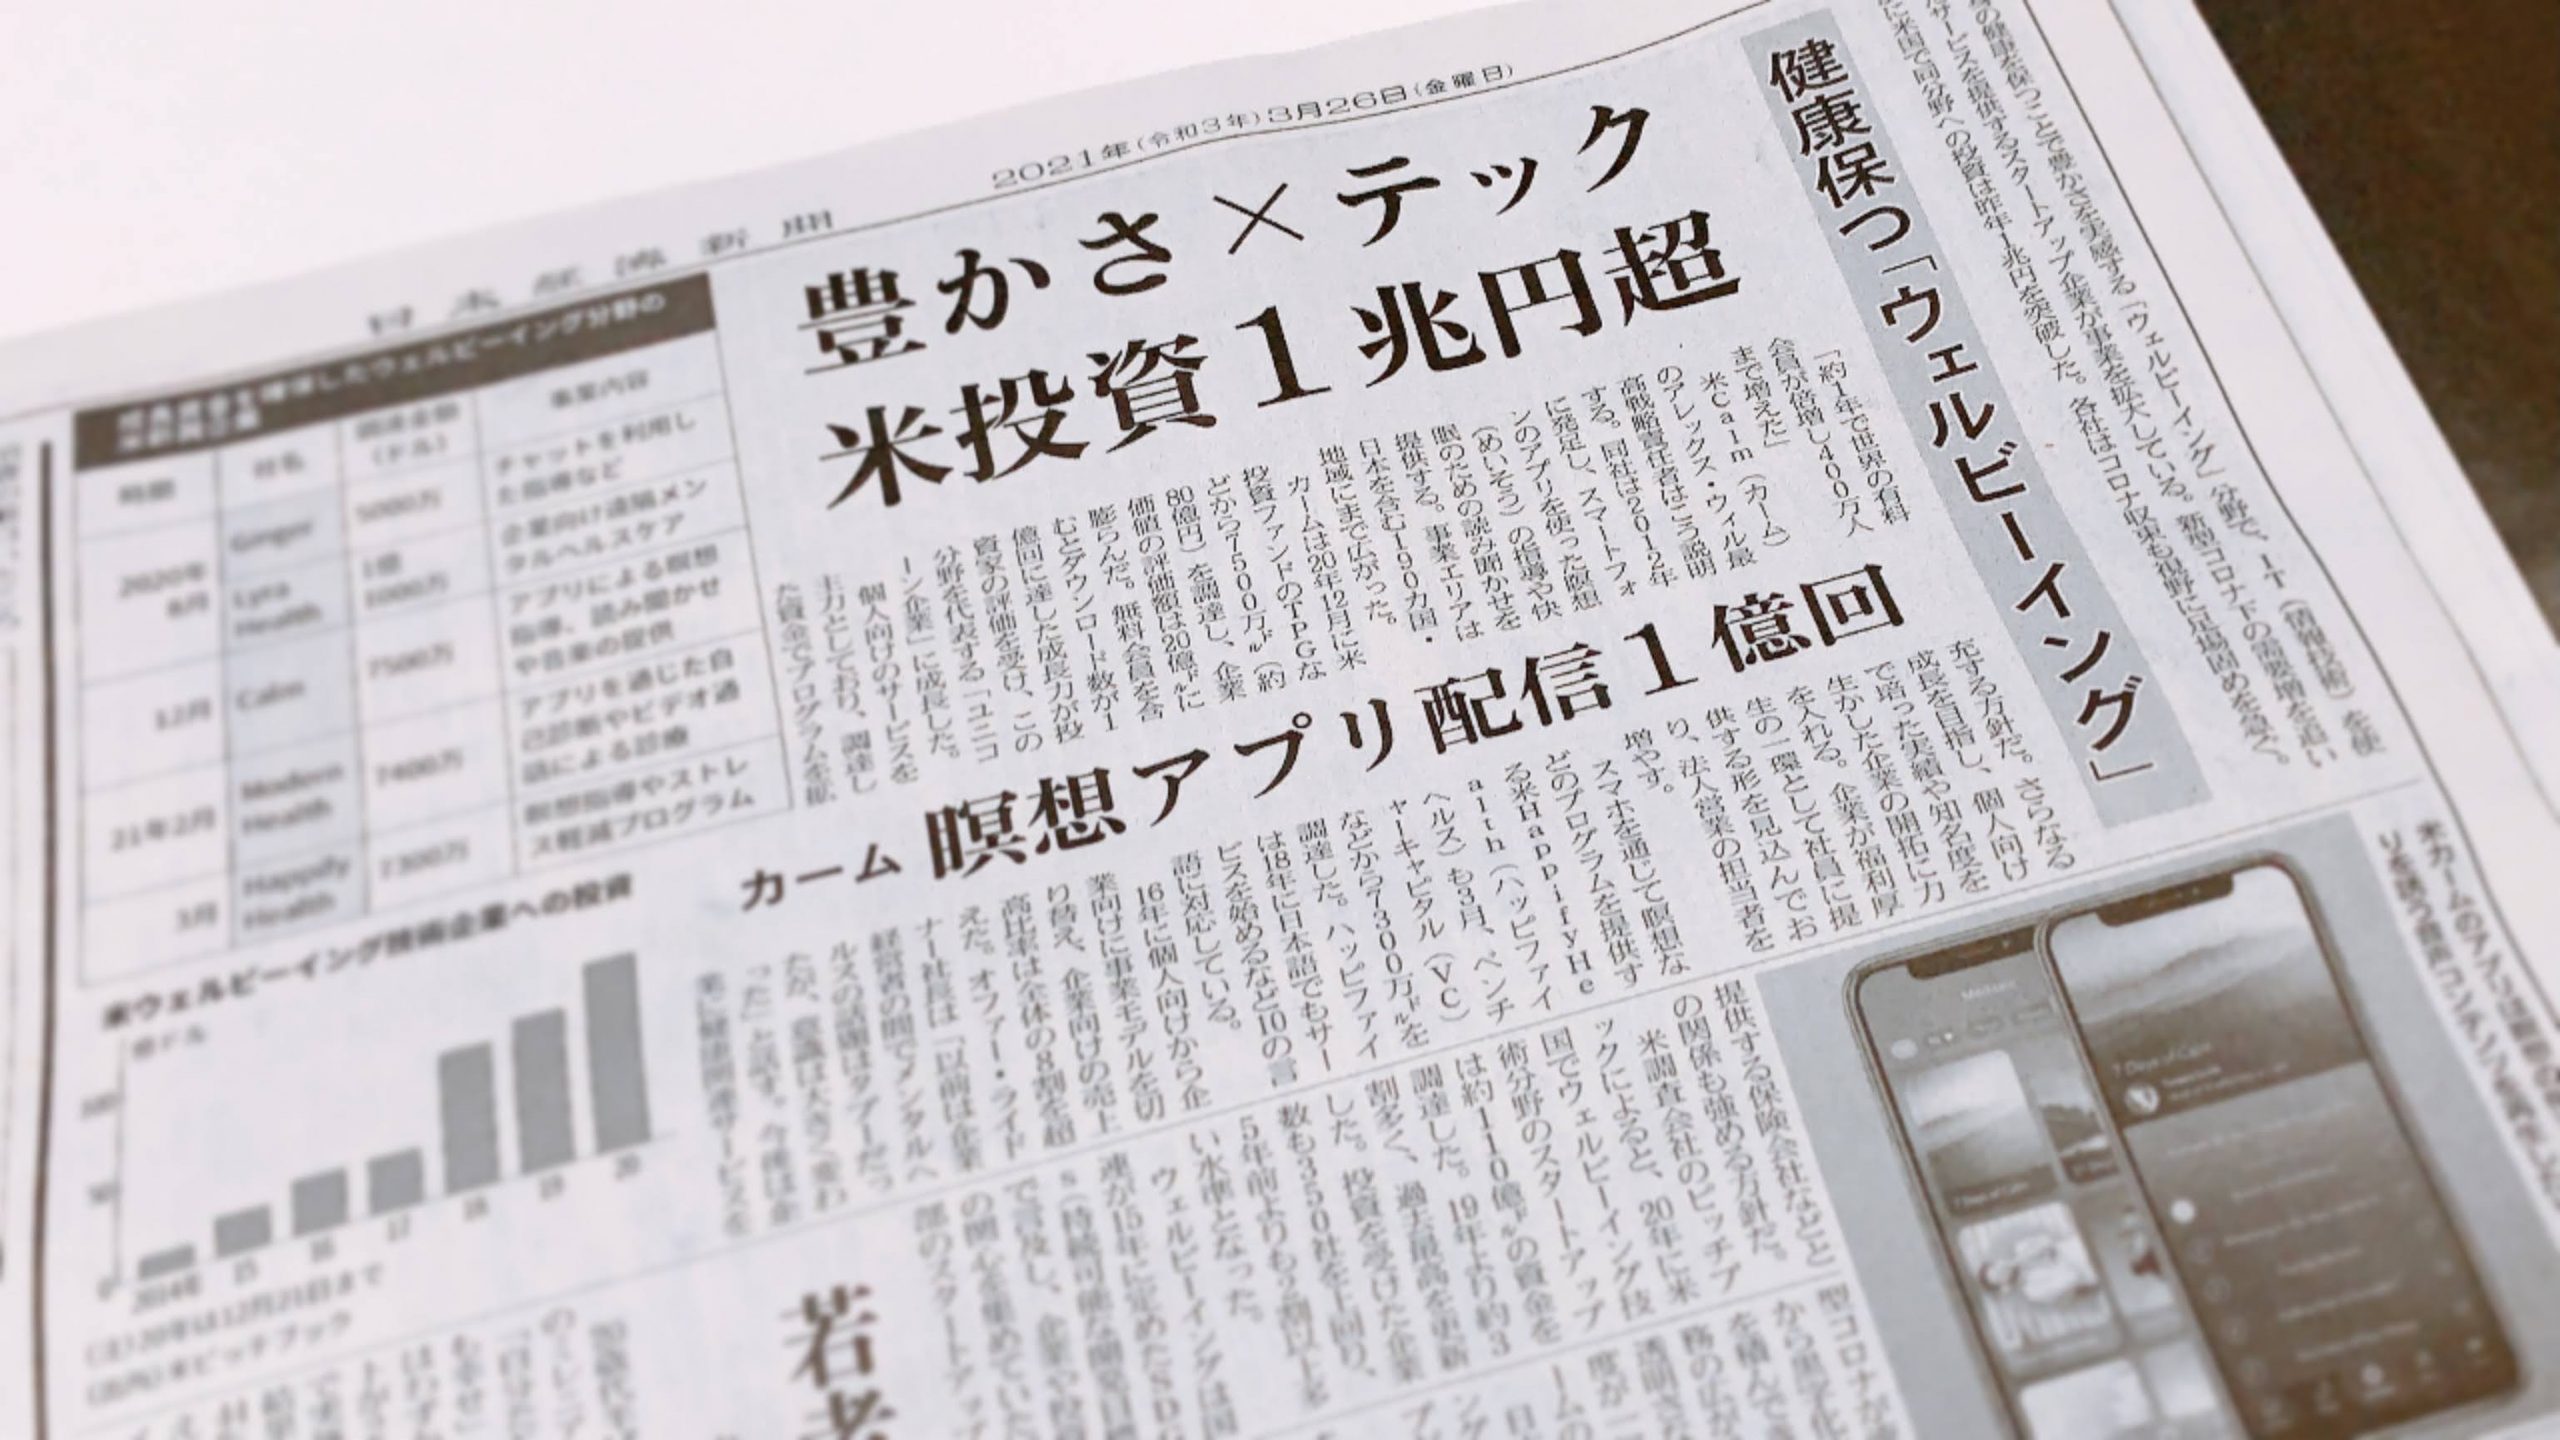 日本のウェルビーイング関連のスタートアップ企業としてラフールが 日本経済新聞 に掲載されました ラフールサーベイ